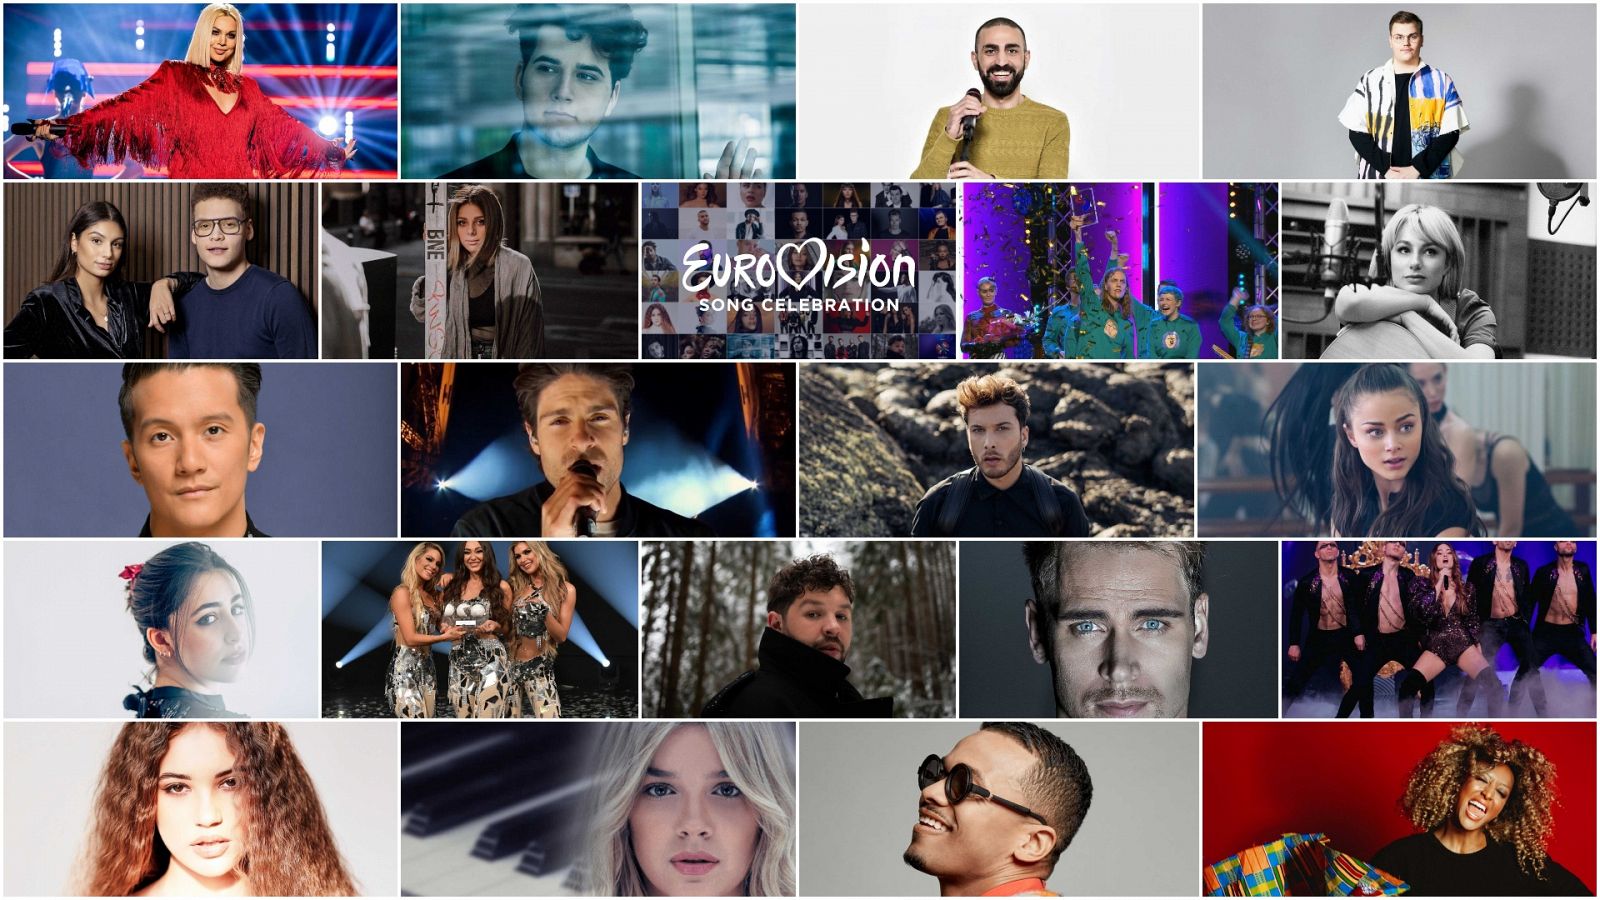 Eurovisión 2020 - Eurovision Song Celebration: Semifinal 2